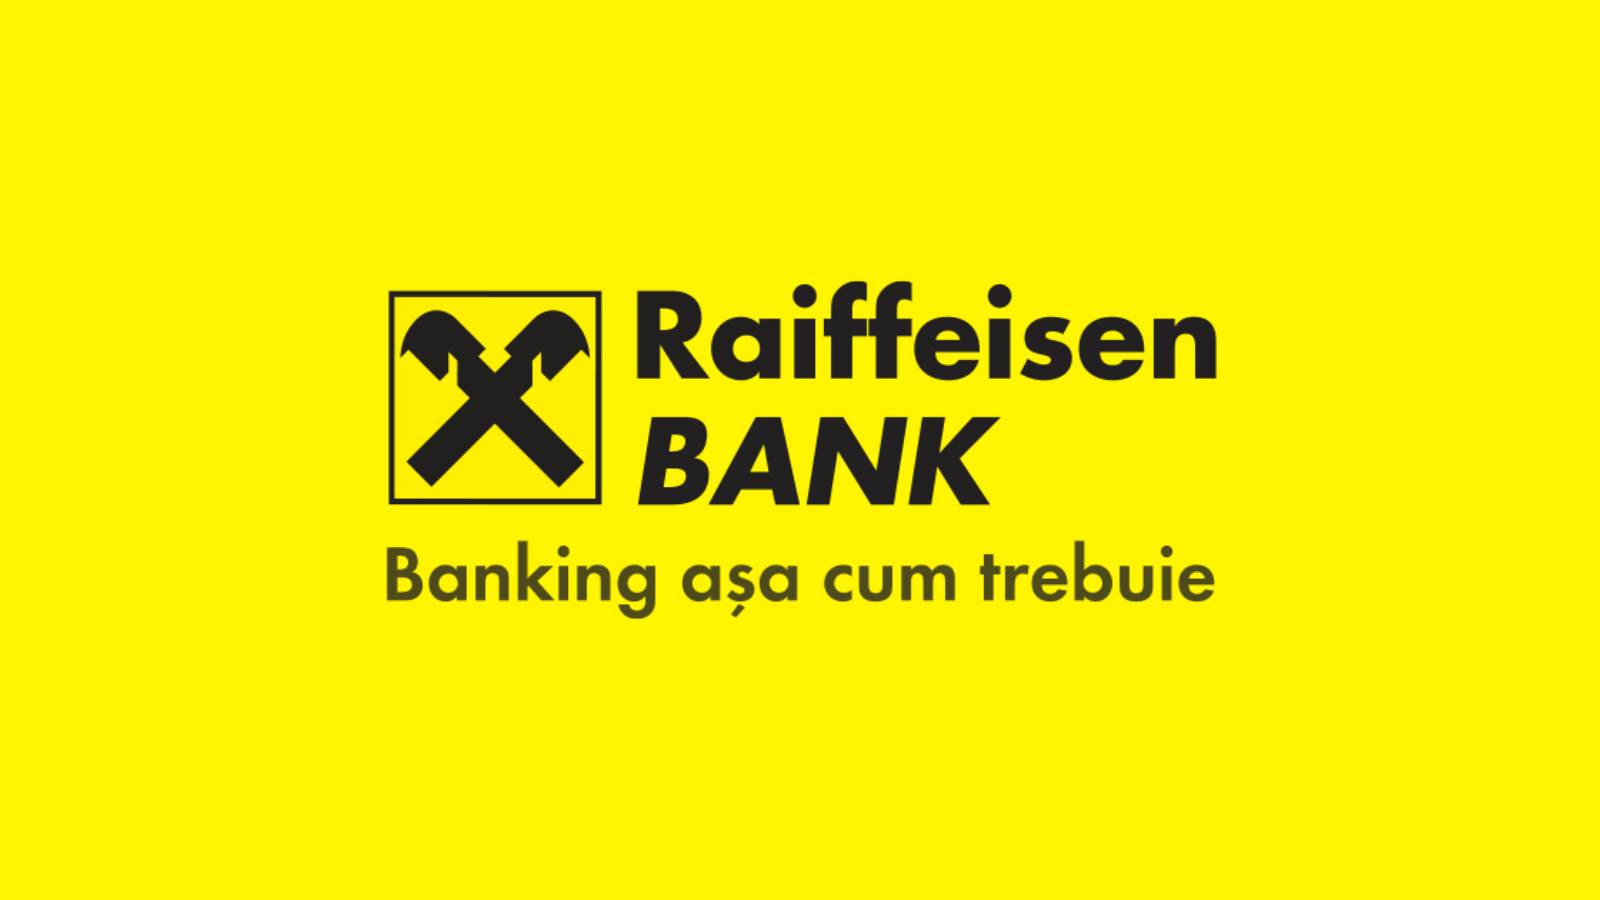 La Banca Raiffeisen brontola